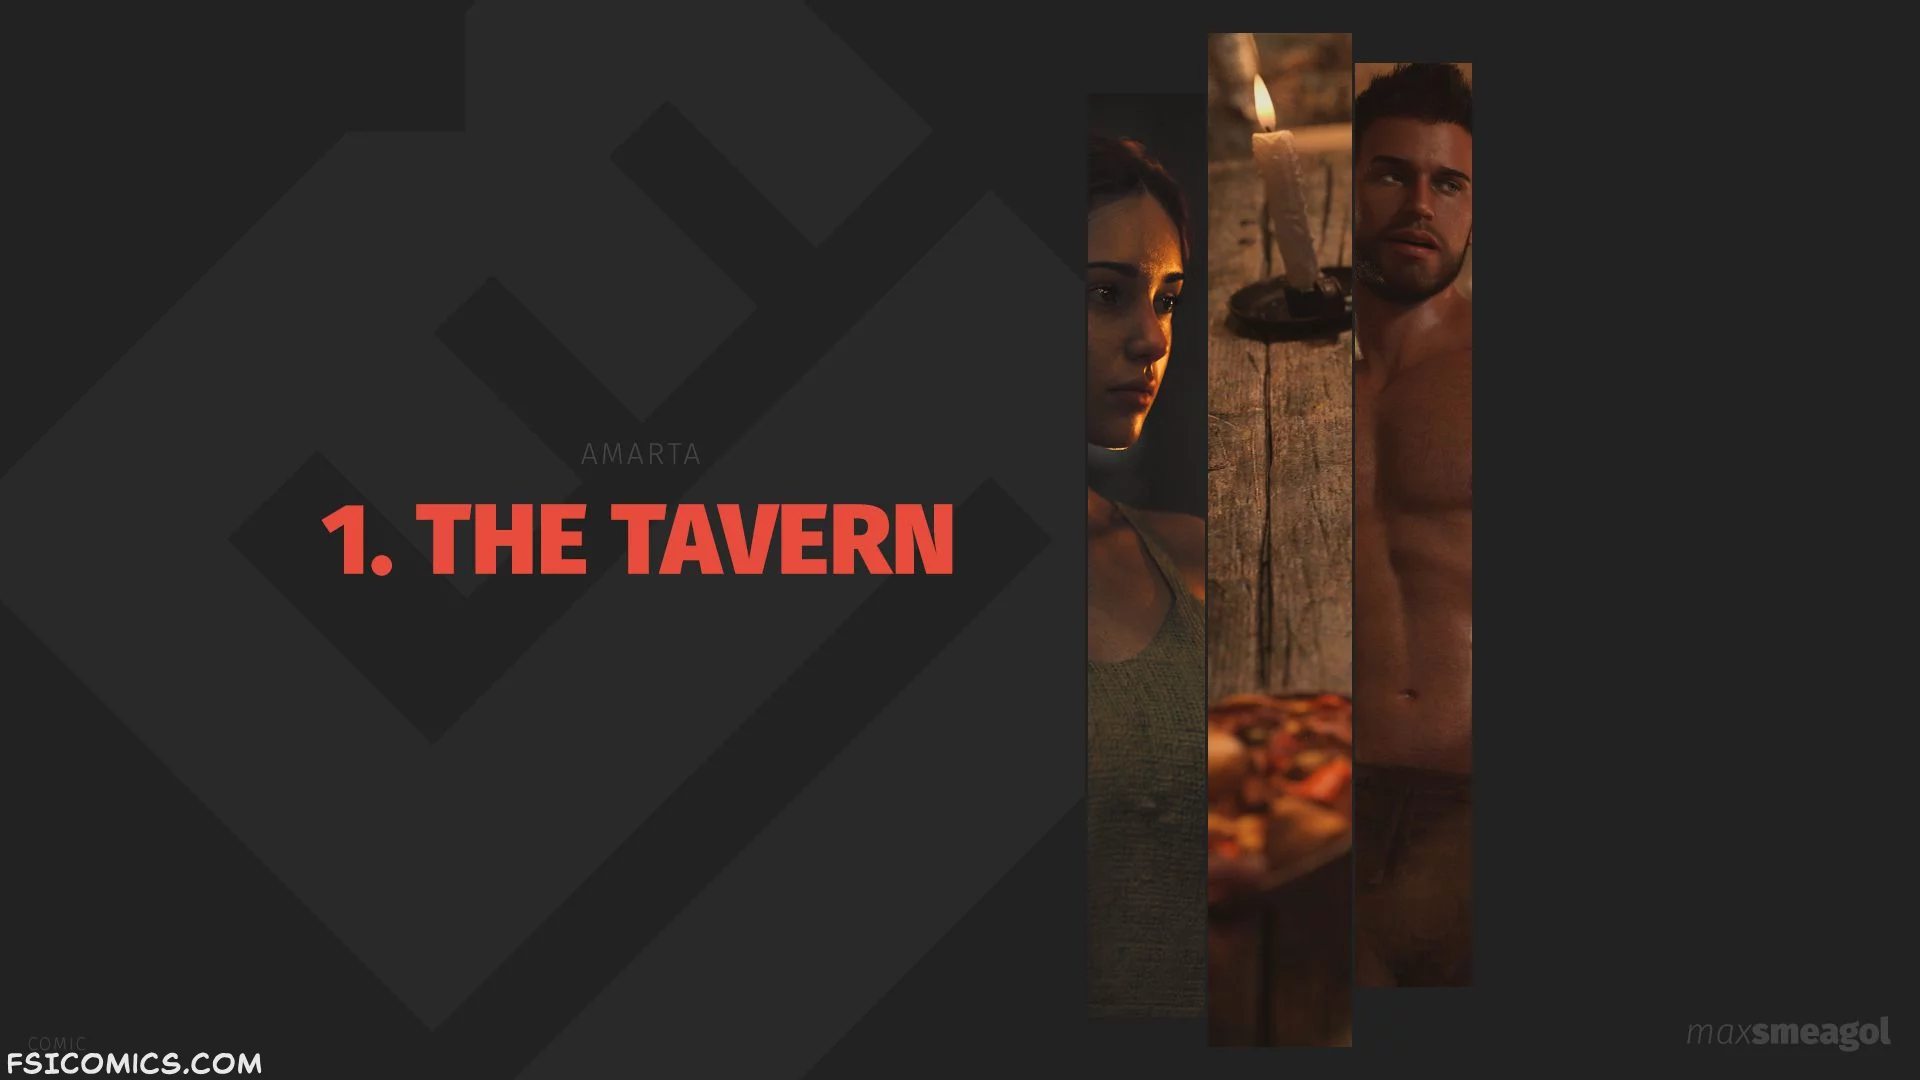 The Tavern Chapter 1 - MaxSmeagol - 27 - FSIComics